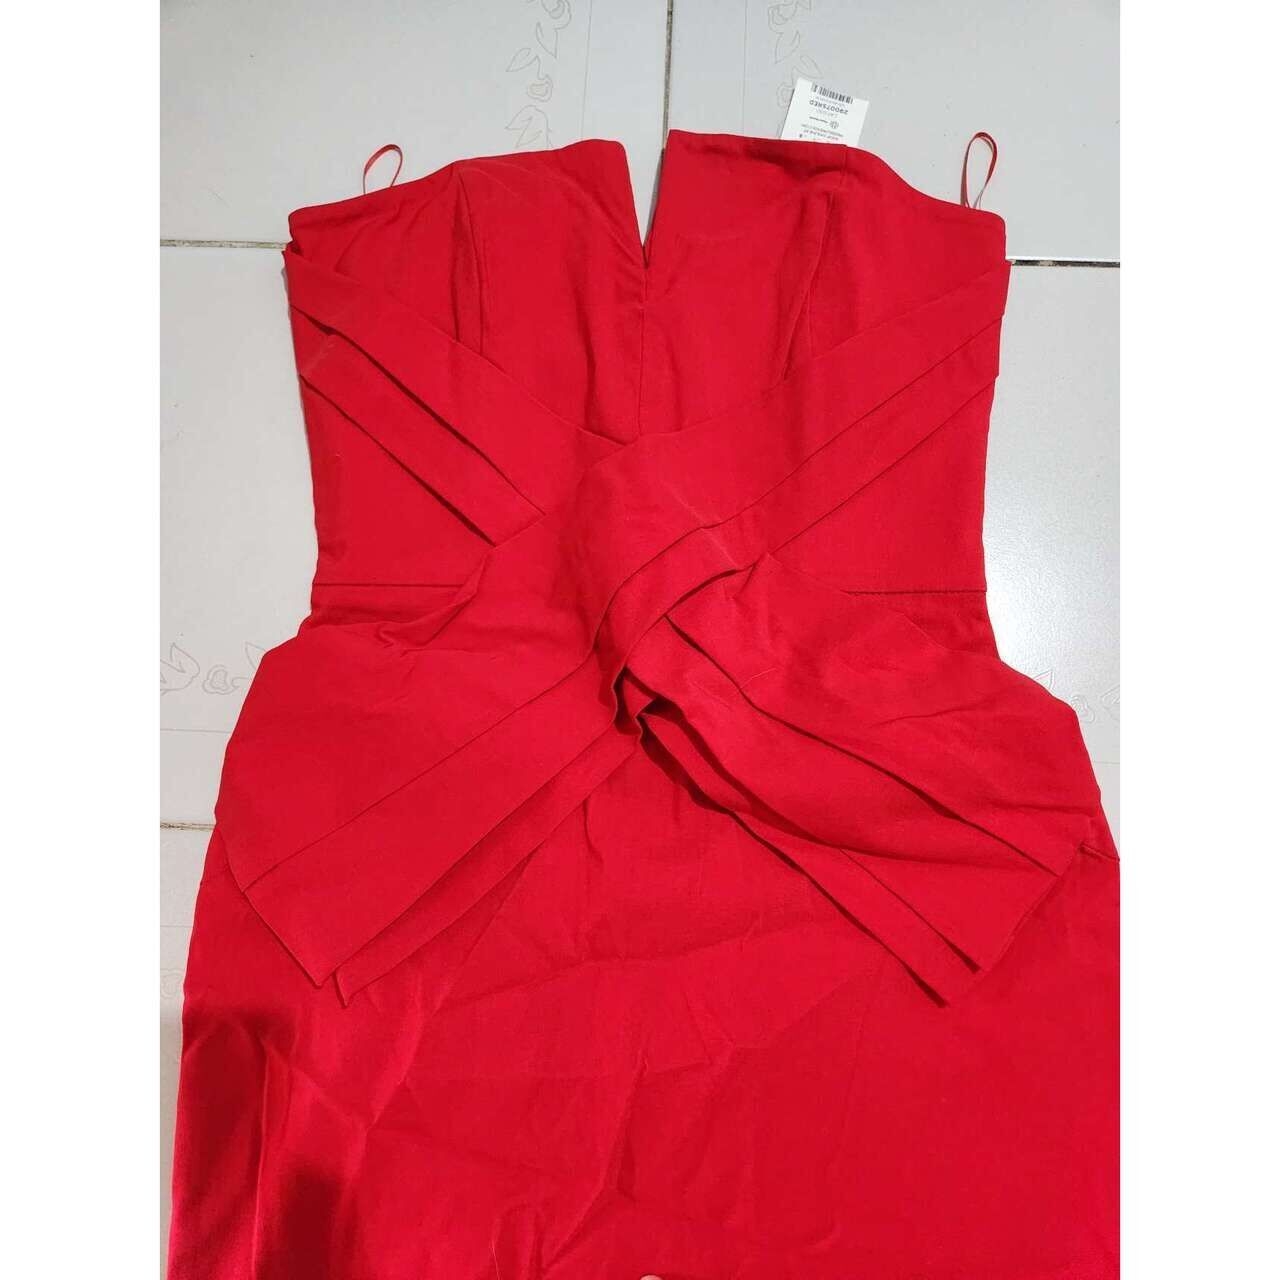 Miss Selfridge Red Mini Dress